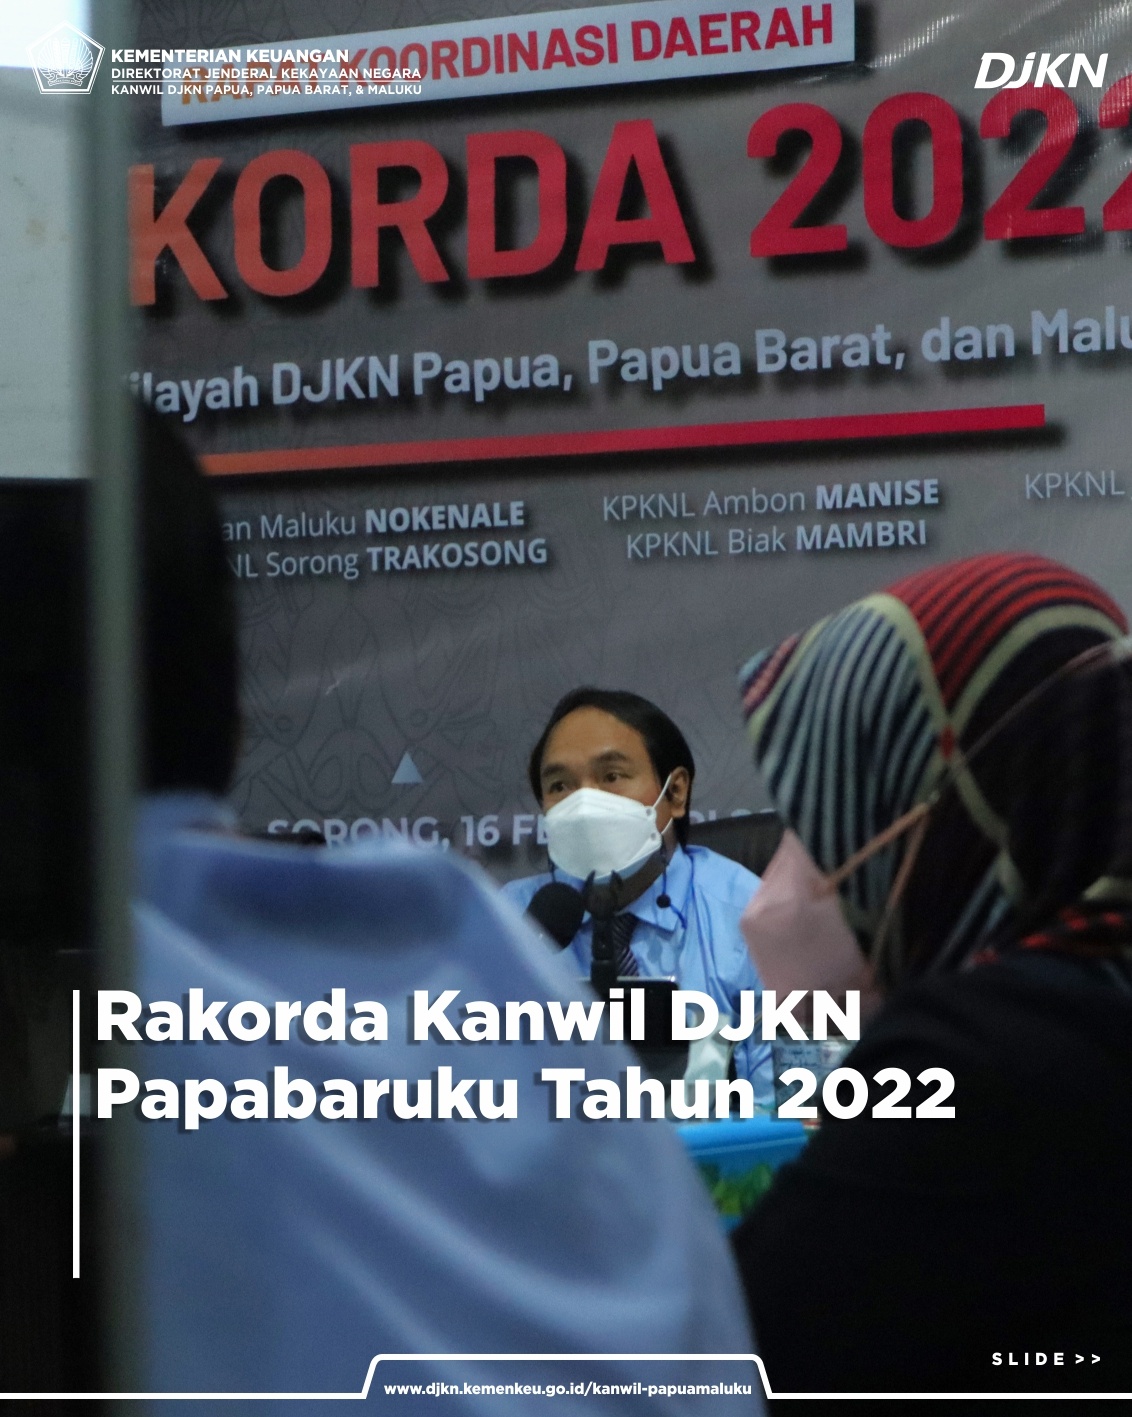 Rapat Koordinasi Daerah Kanwil DJKN Papabaruku Tahun 2022